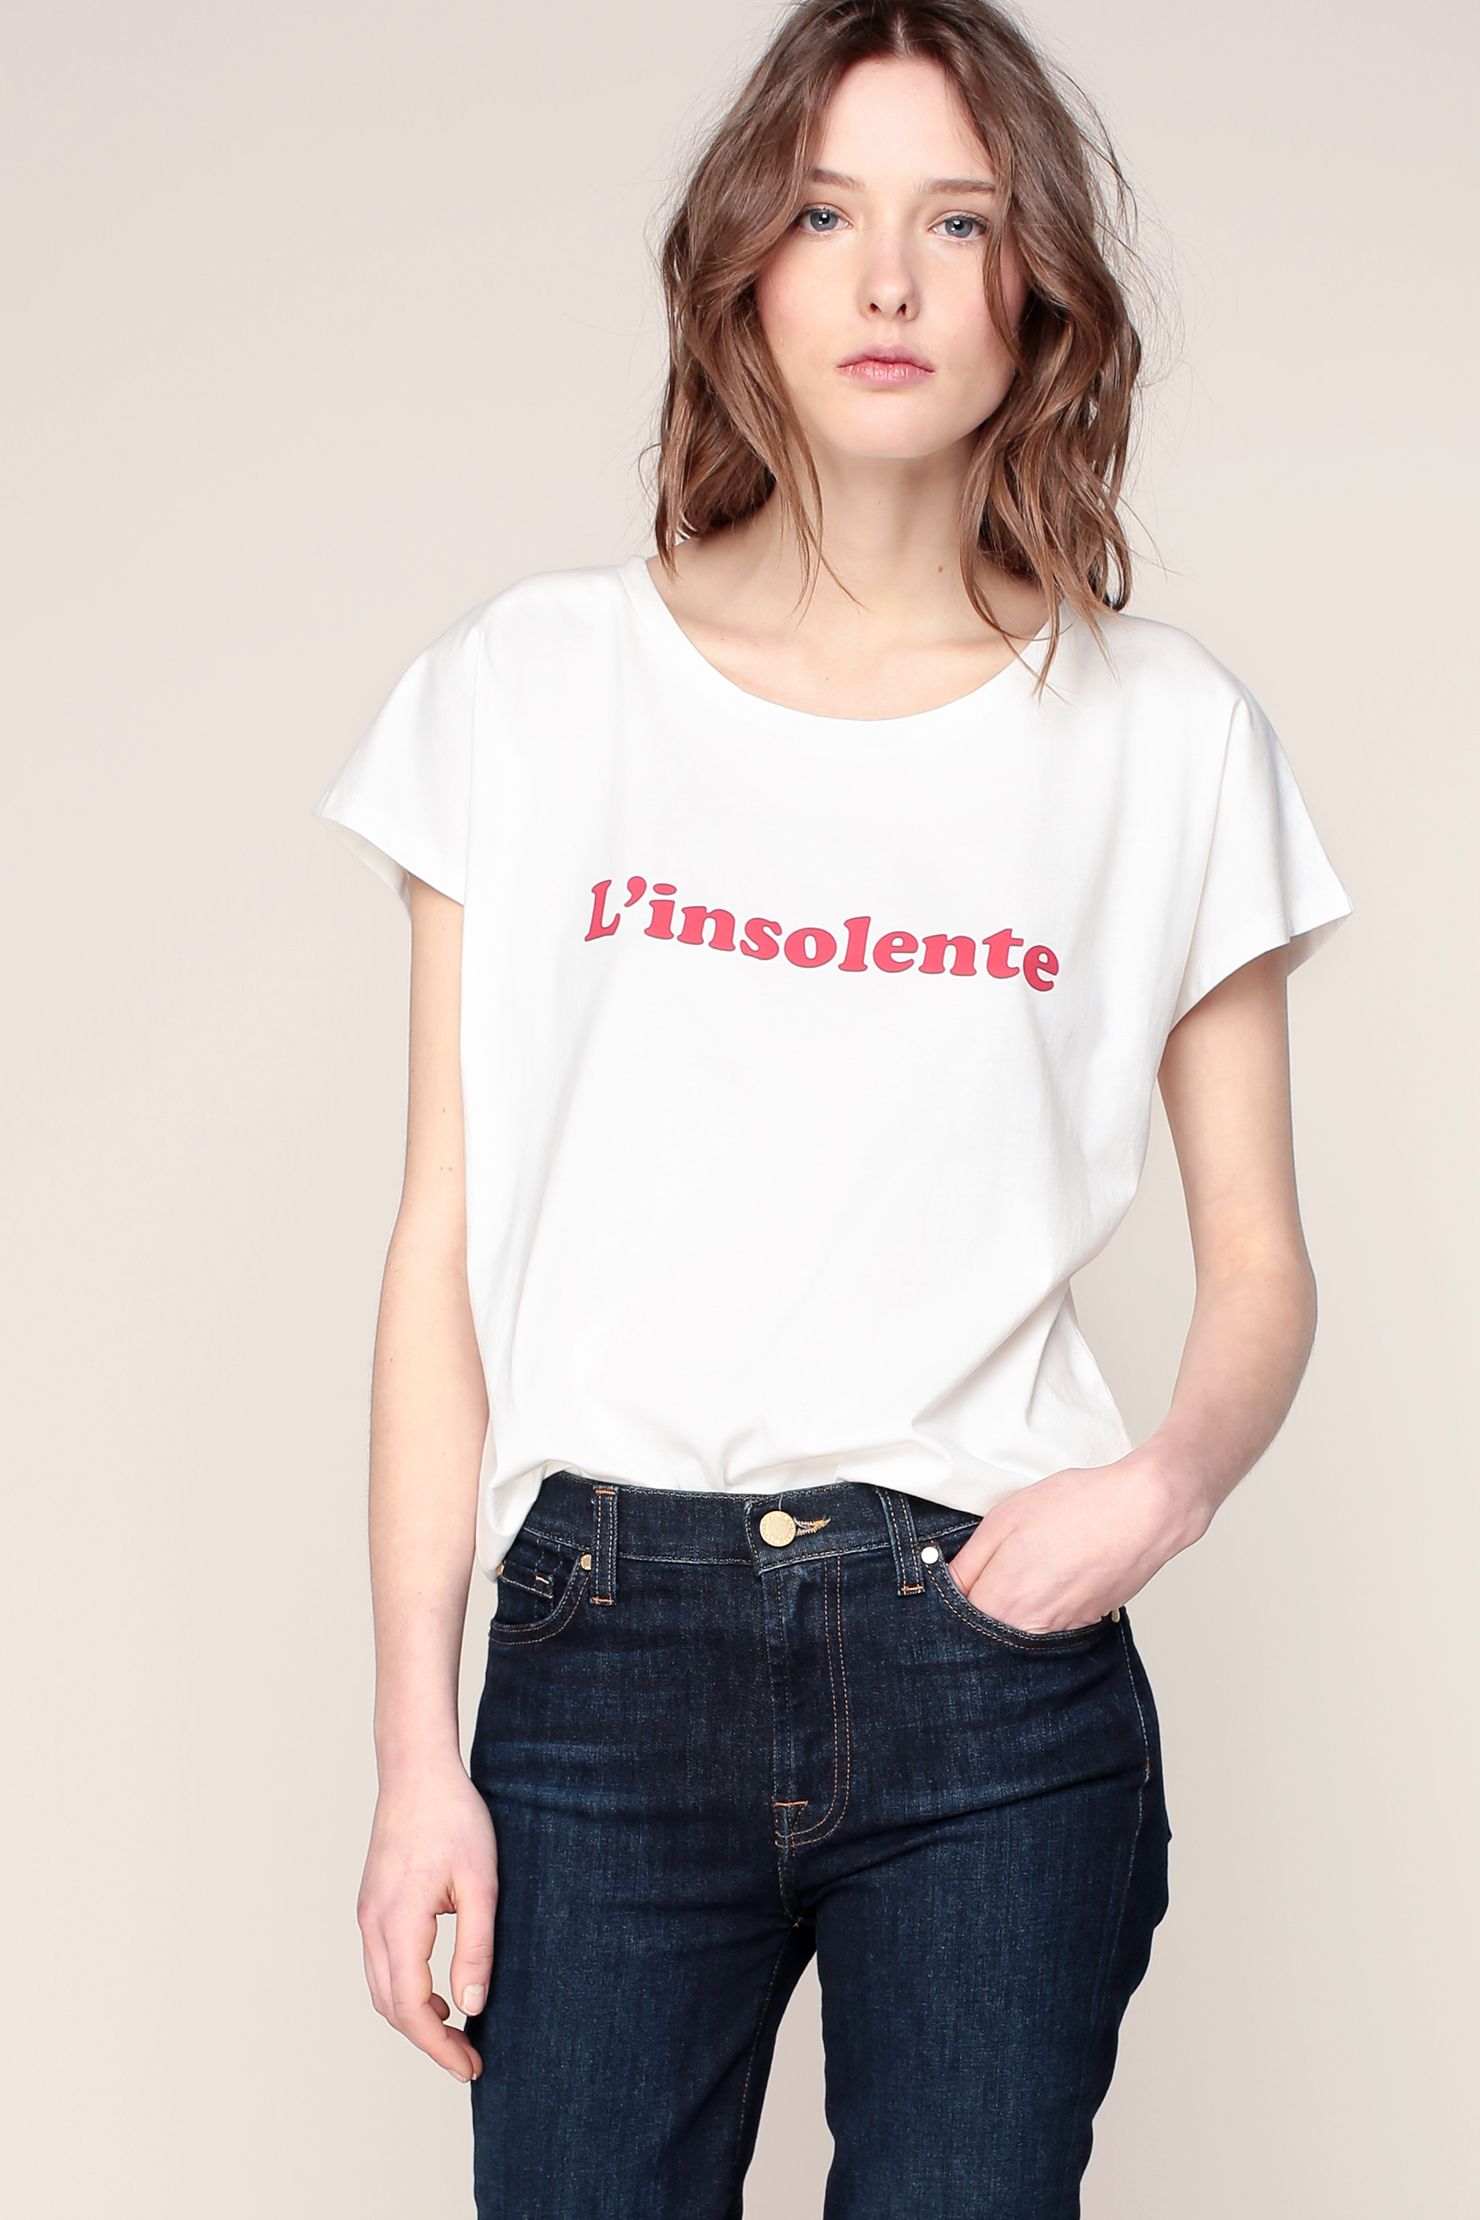 10-t-shirt-feministe-l'insolene-la-petite-francaise